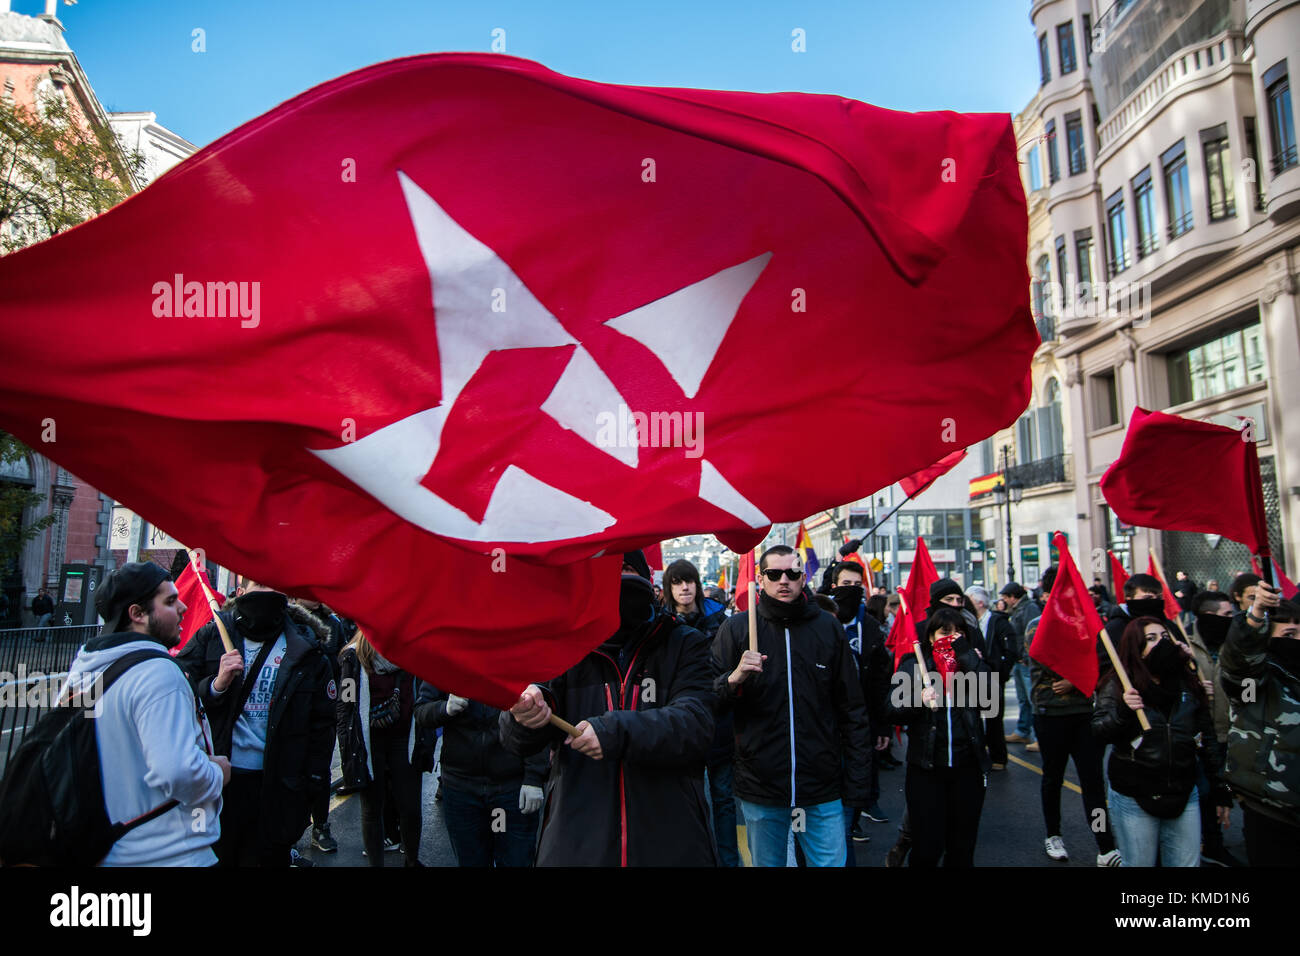 Madrid, Spagna. 6 dicembre, 2017. Un uomo rinuncia a una bandiera sovietica chiedono una terza repubblica durante una dimostrazione contro la monarchia il giorno del 39o anniversario della Costituzione spagnola di Madrid in Spagna. Credito: Marcos del mazo/alamy live news Foto Stock